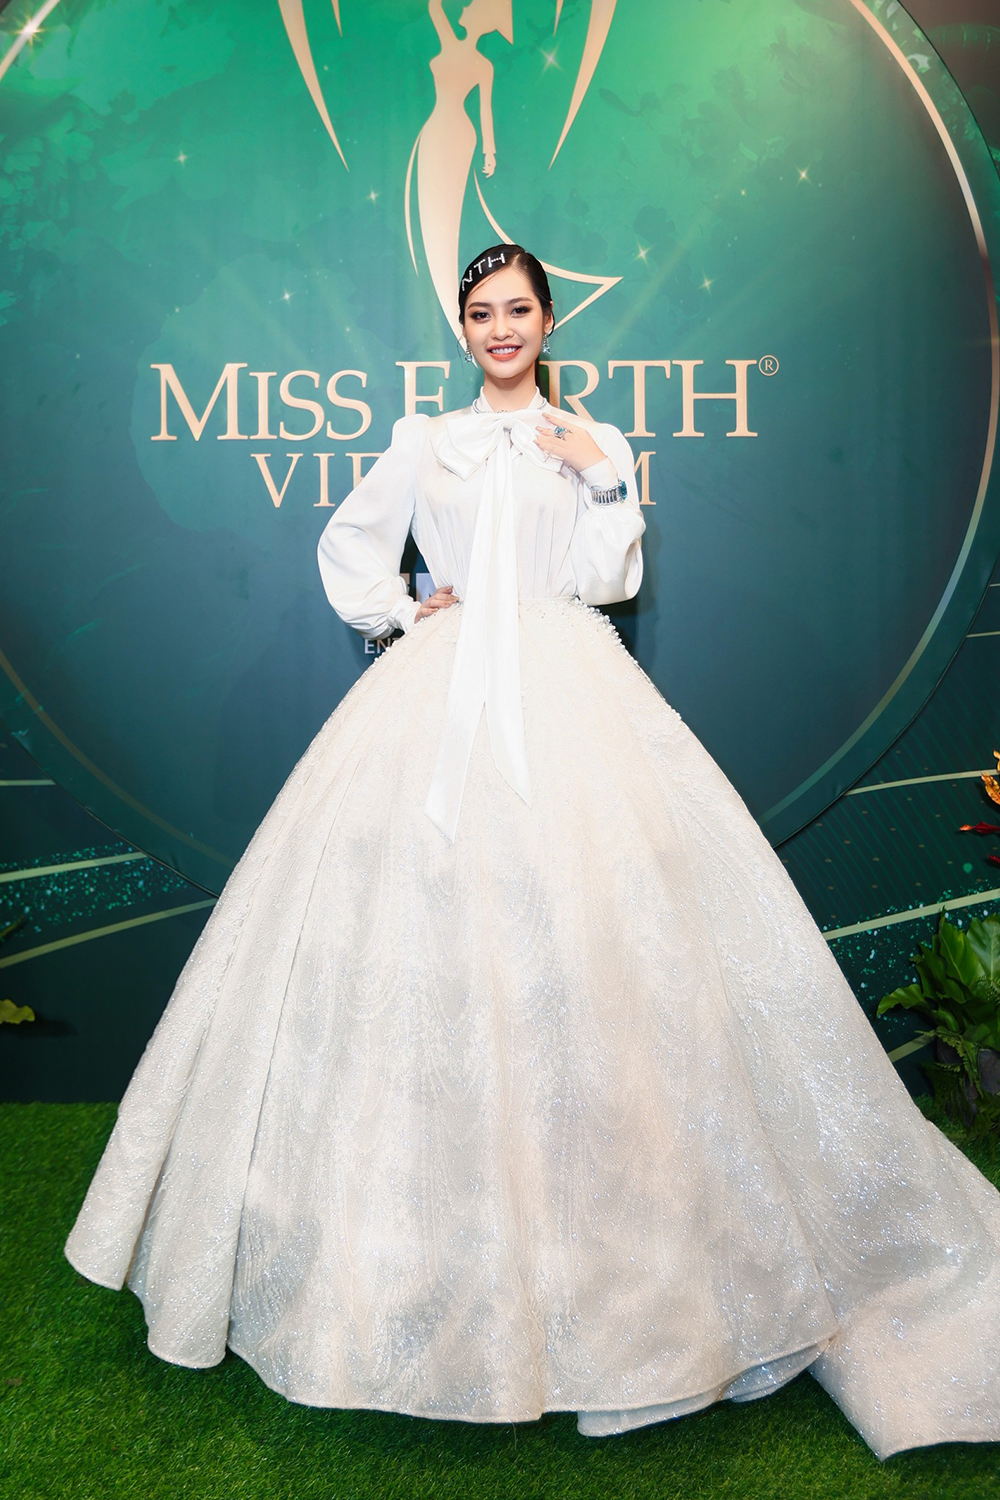 Harper's Bazaar_Nông Thúy Hằng dự họp báo Miss Earth Vietnam_03